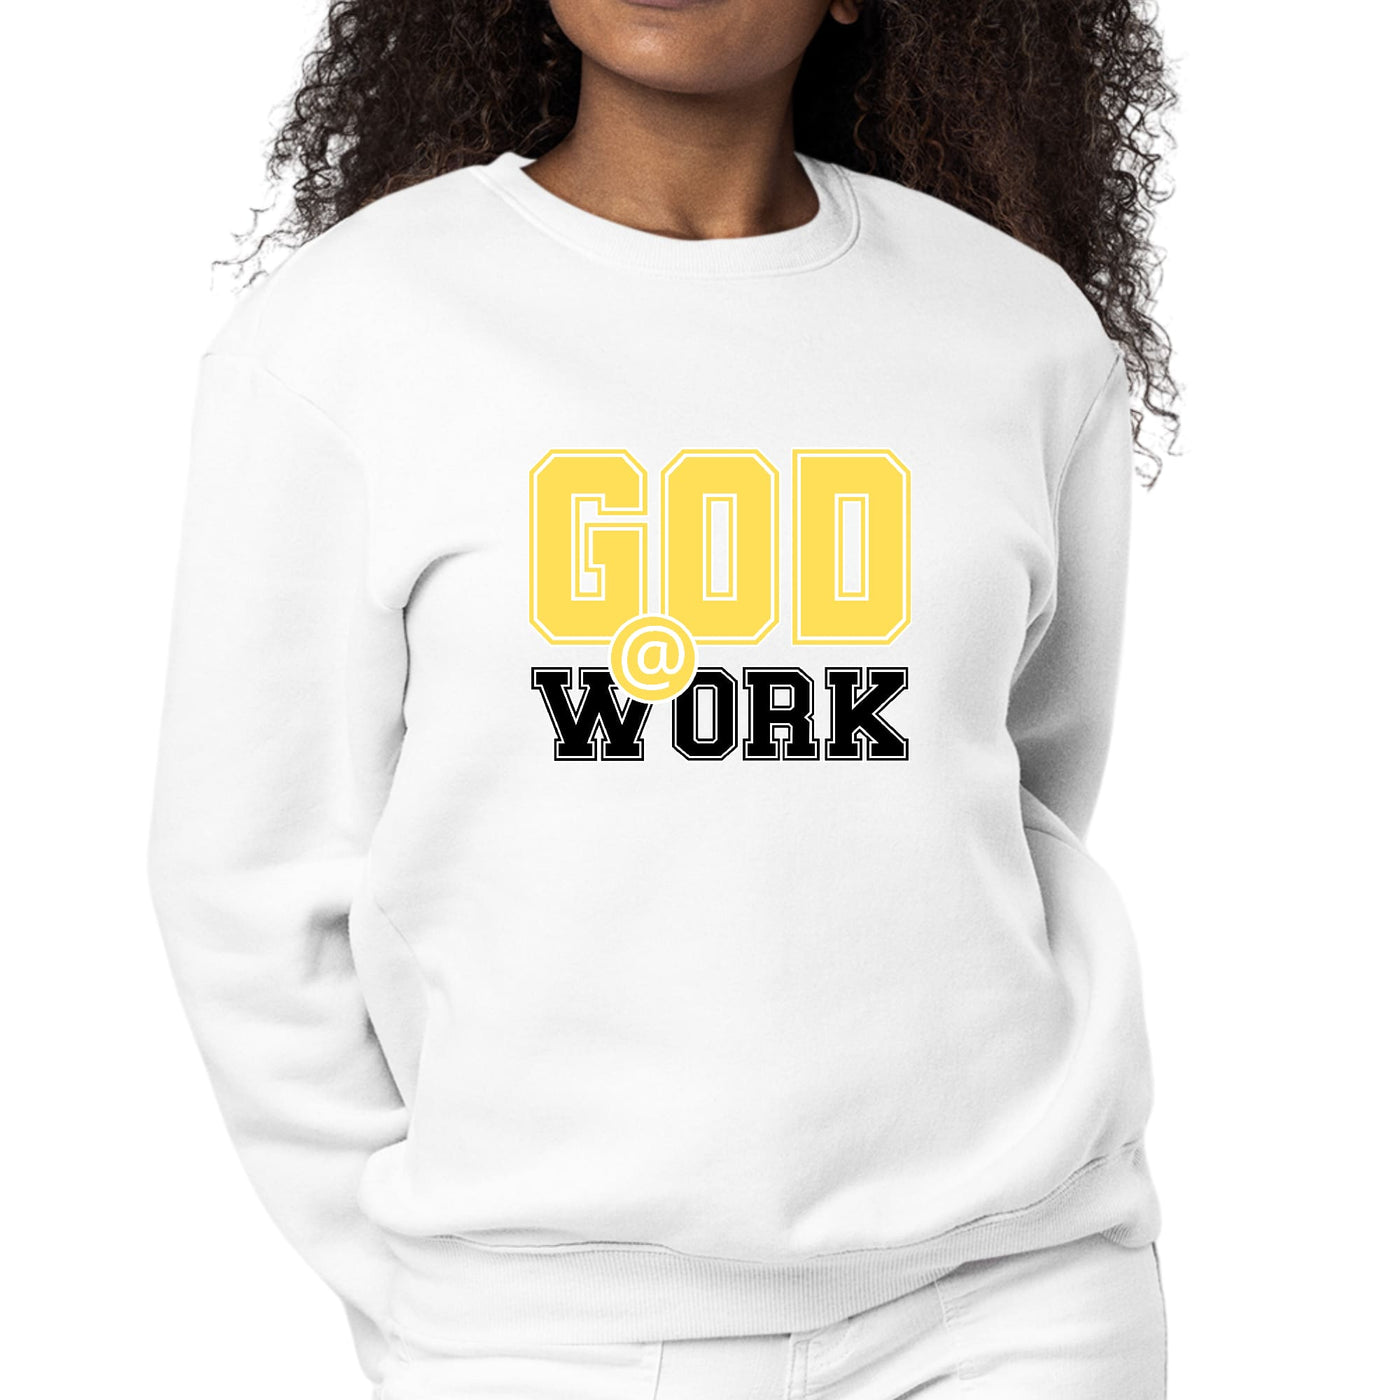 Womens Graphic Sweatshirt God @ Work Yellow And Black Print - Womens